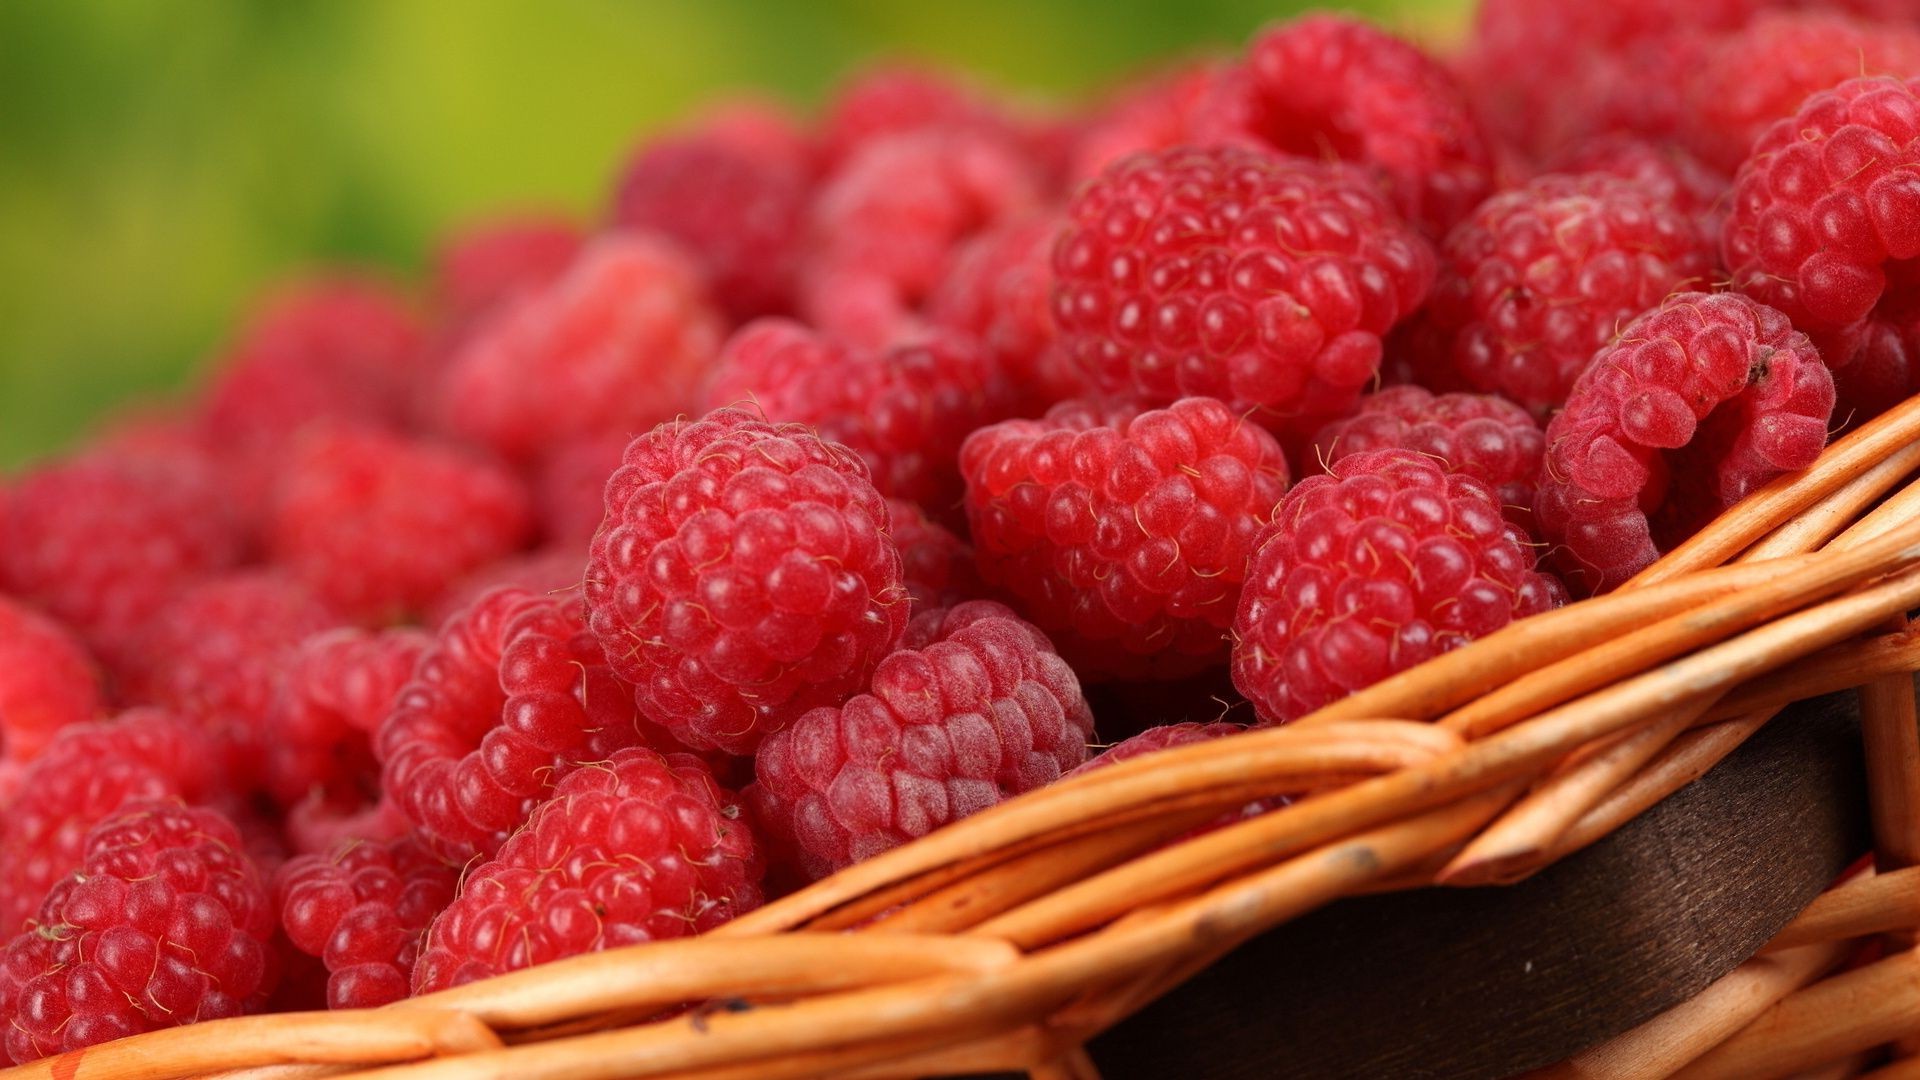 ягоды еда фрукты малина сладкий сочные вкусные ягодка здоровый крупным планом питание кондитерское изделие вкусные диета здоровья природа освежение